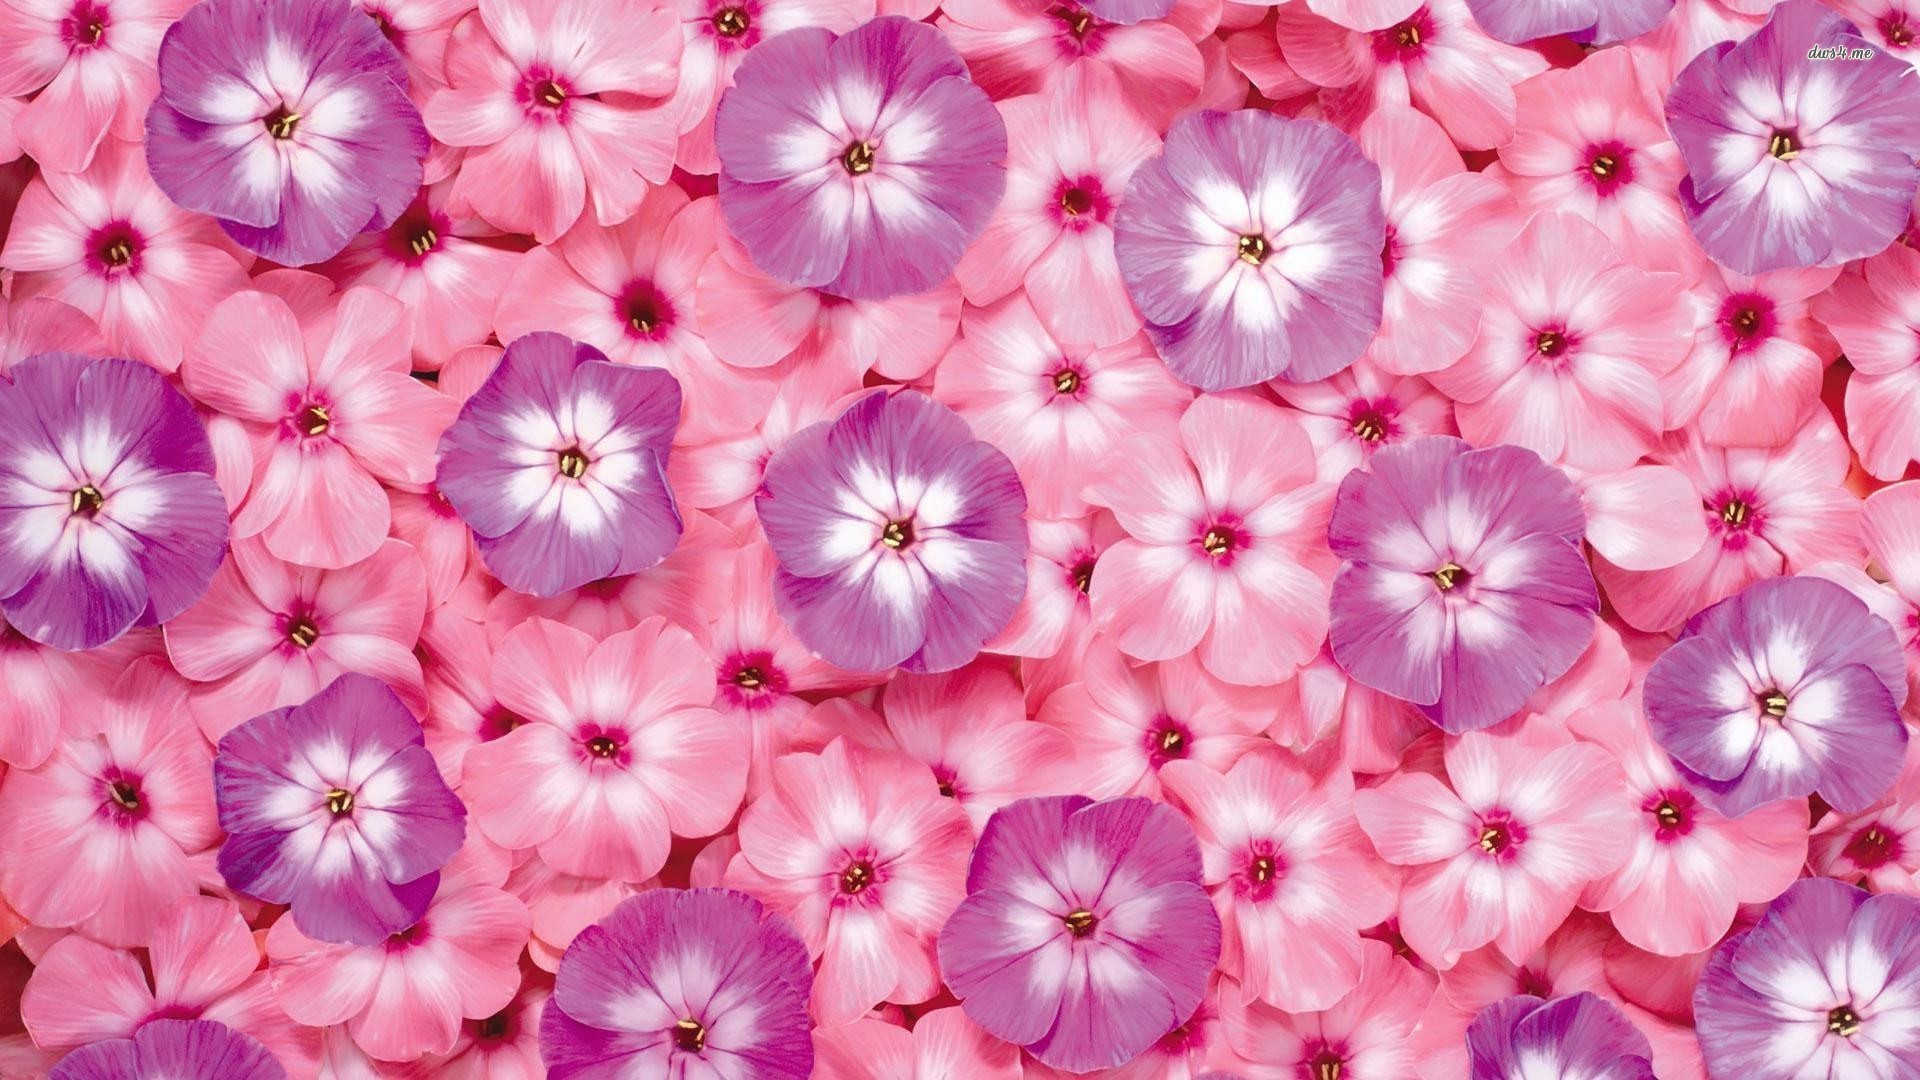 1920x1080 pink flower wallpaper for desktop - http://hdwallpaper.info/pink-flower- wallpaper-for-desktop/ #Flower HD Wallpapers | HD Wallpapers | Pinterest |  Flower ...